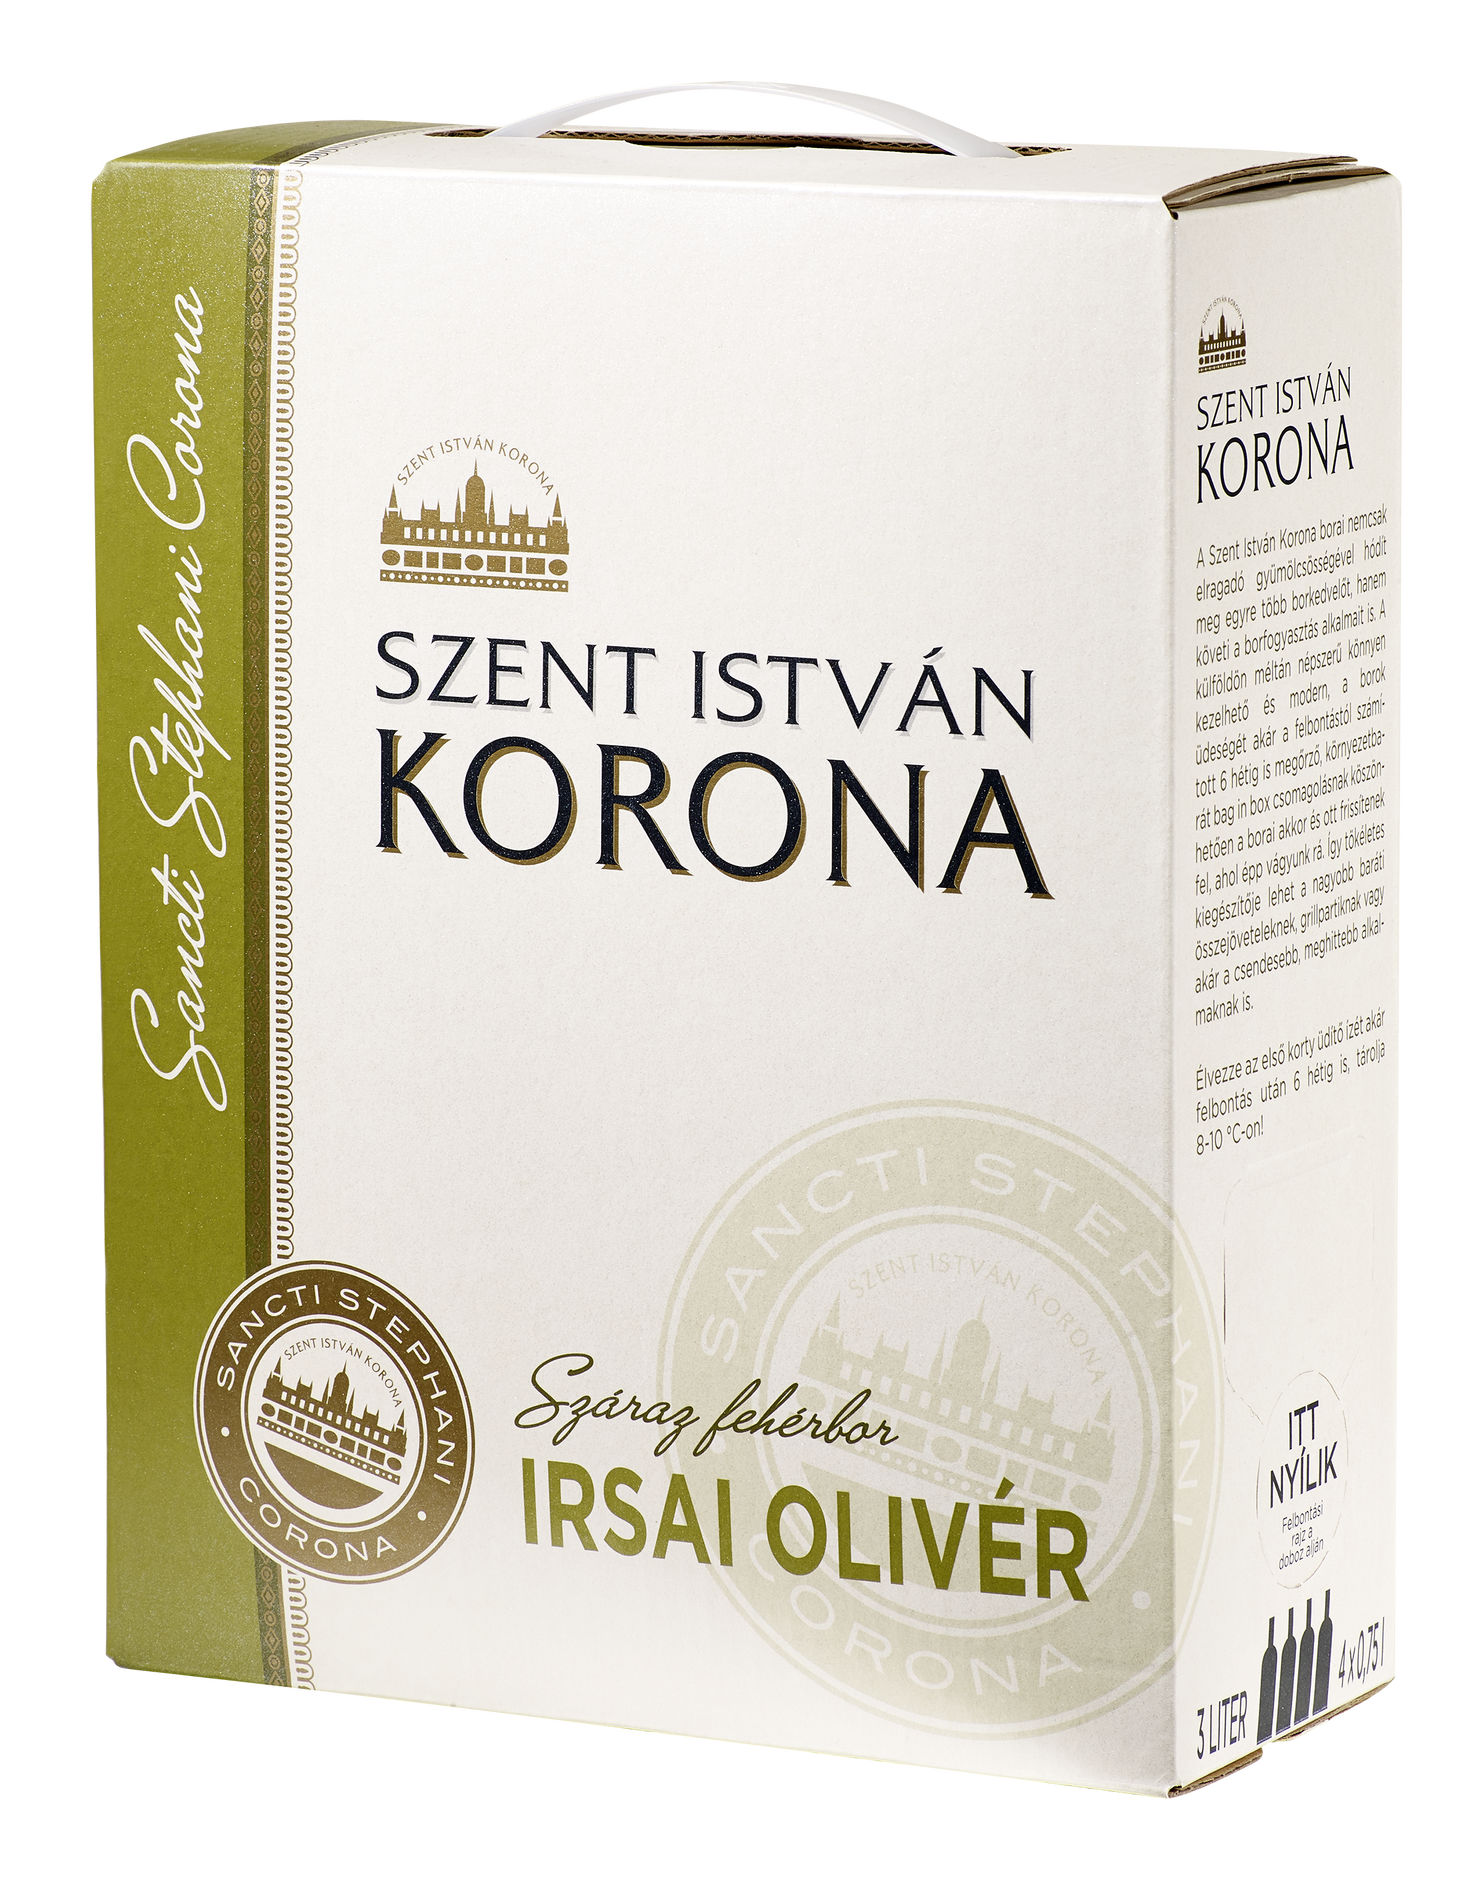 Szent István Korona Irsai Olivér 3 literes bag in box